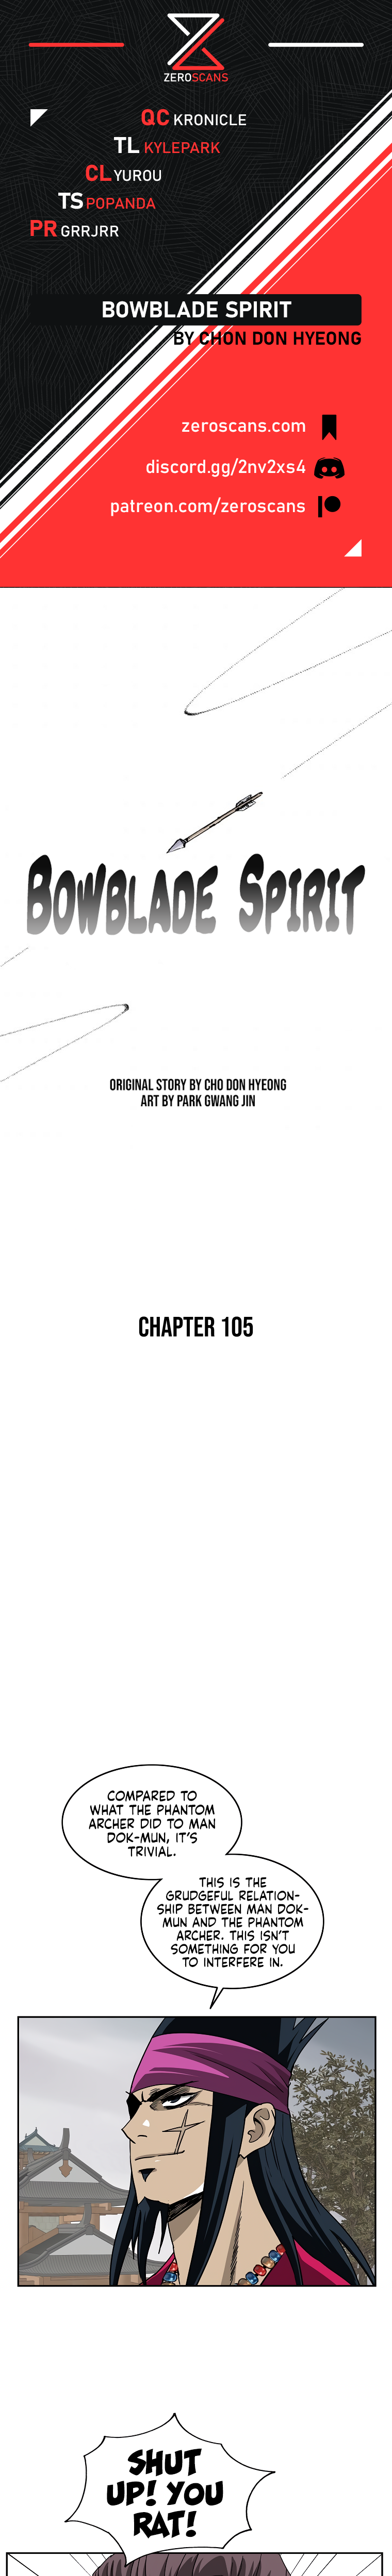 Bowblade Spirit - Chapter 10842 - Image 1